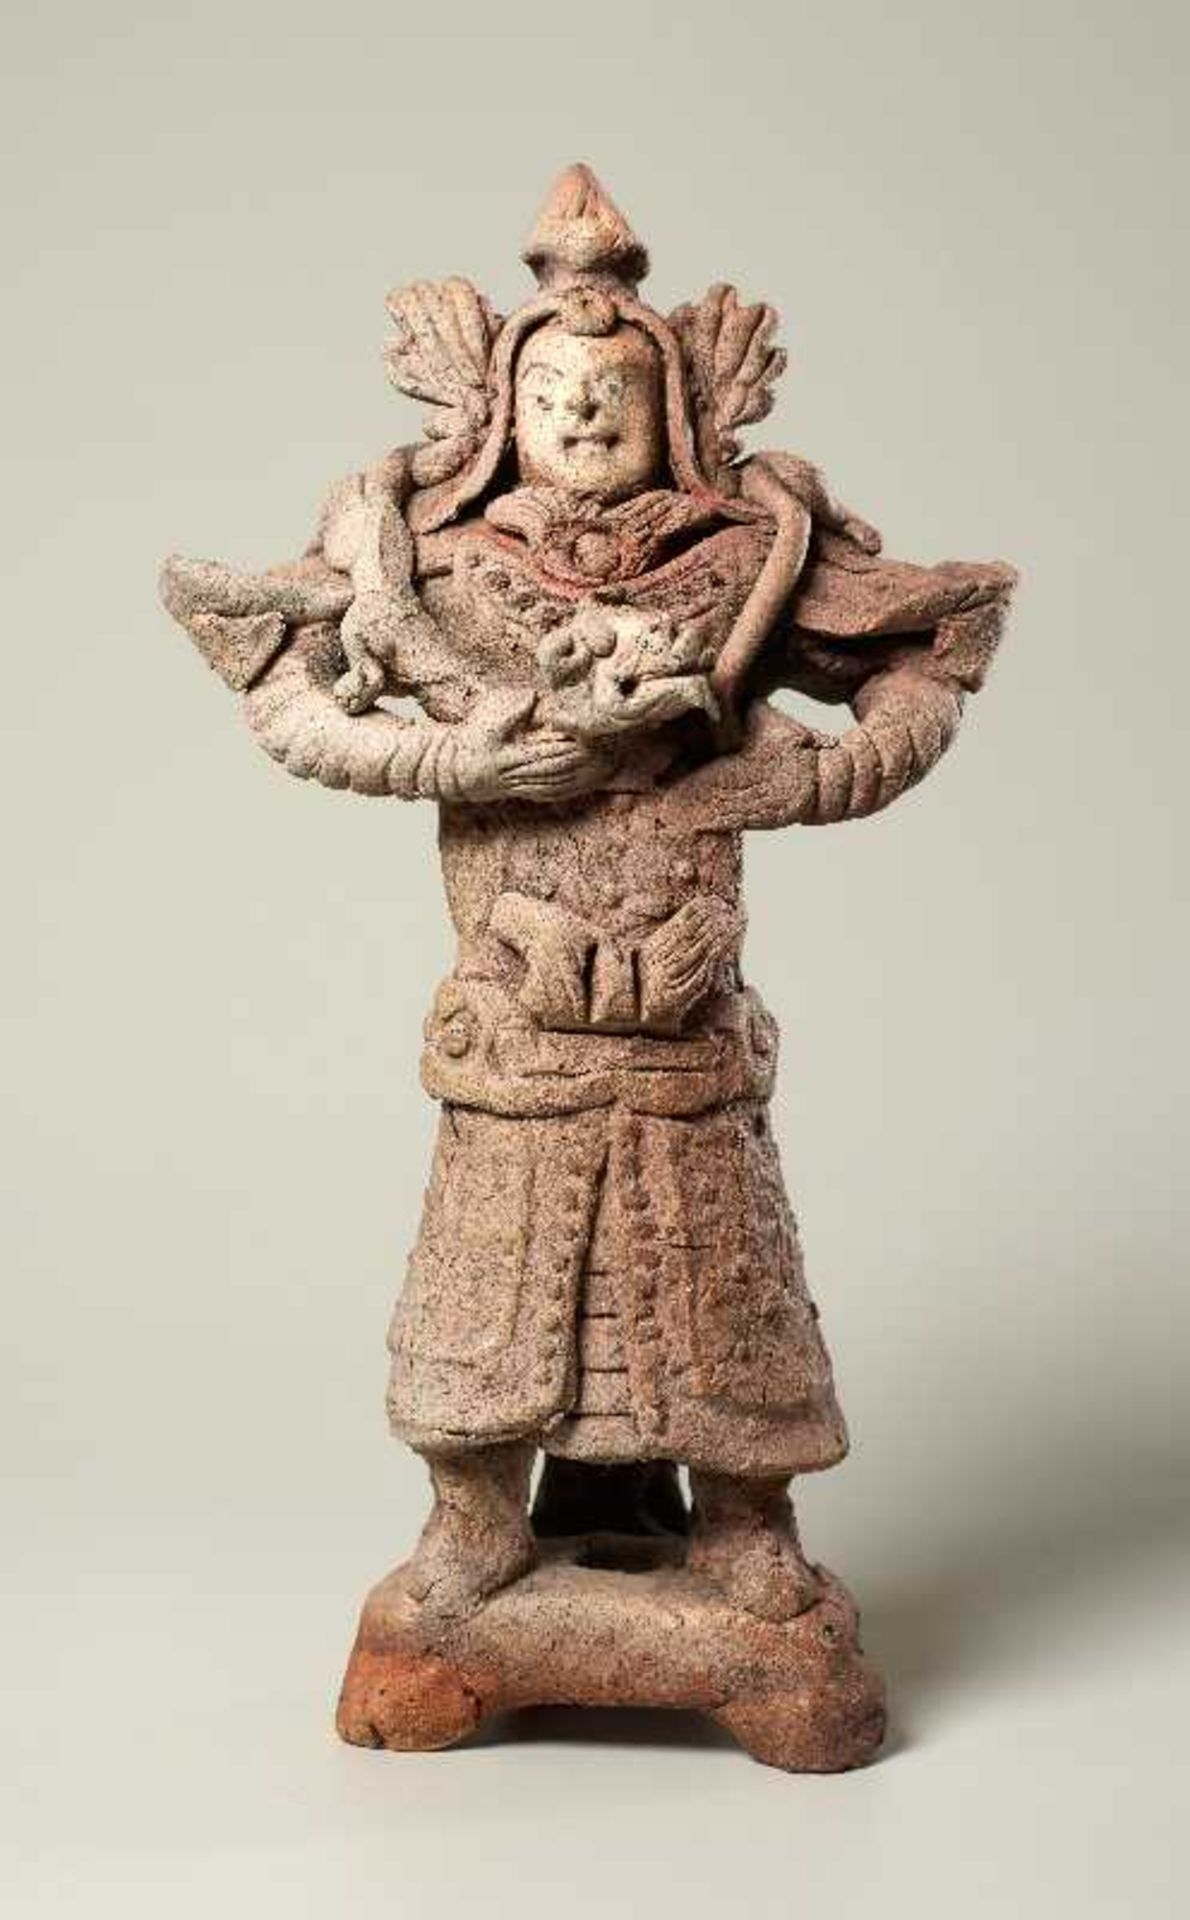 TRUTZIGER GRABWÄCHTER MIT SCHLANGE Terrakotta. China, Yuan-Dynastie (ca. 14. Jh.) Witzig geformt,